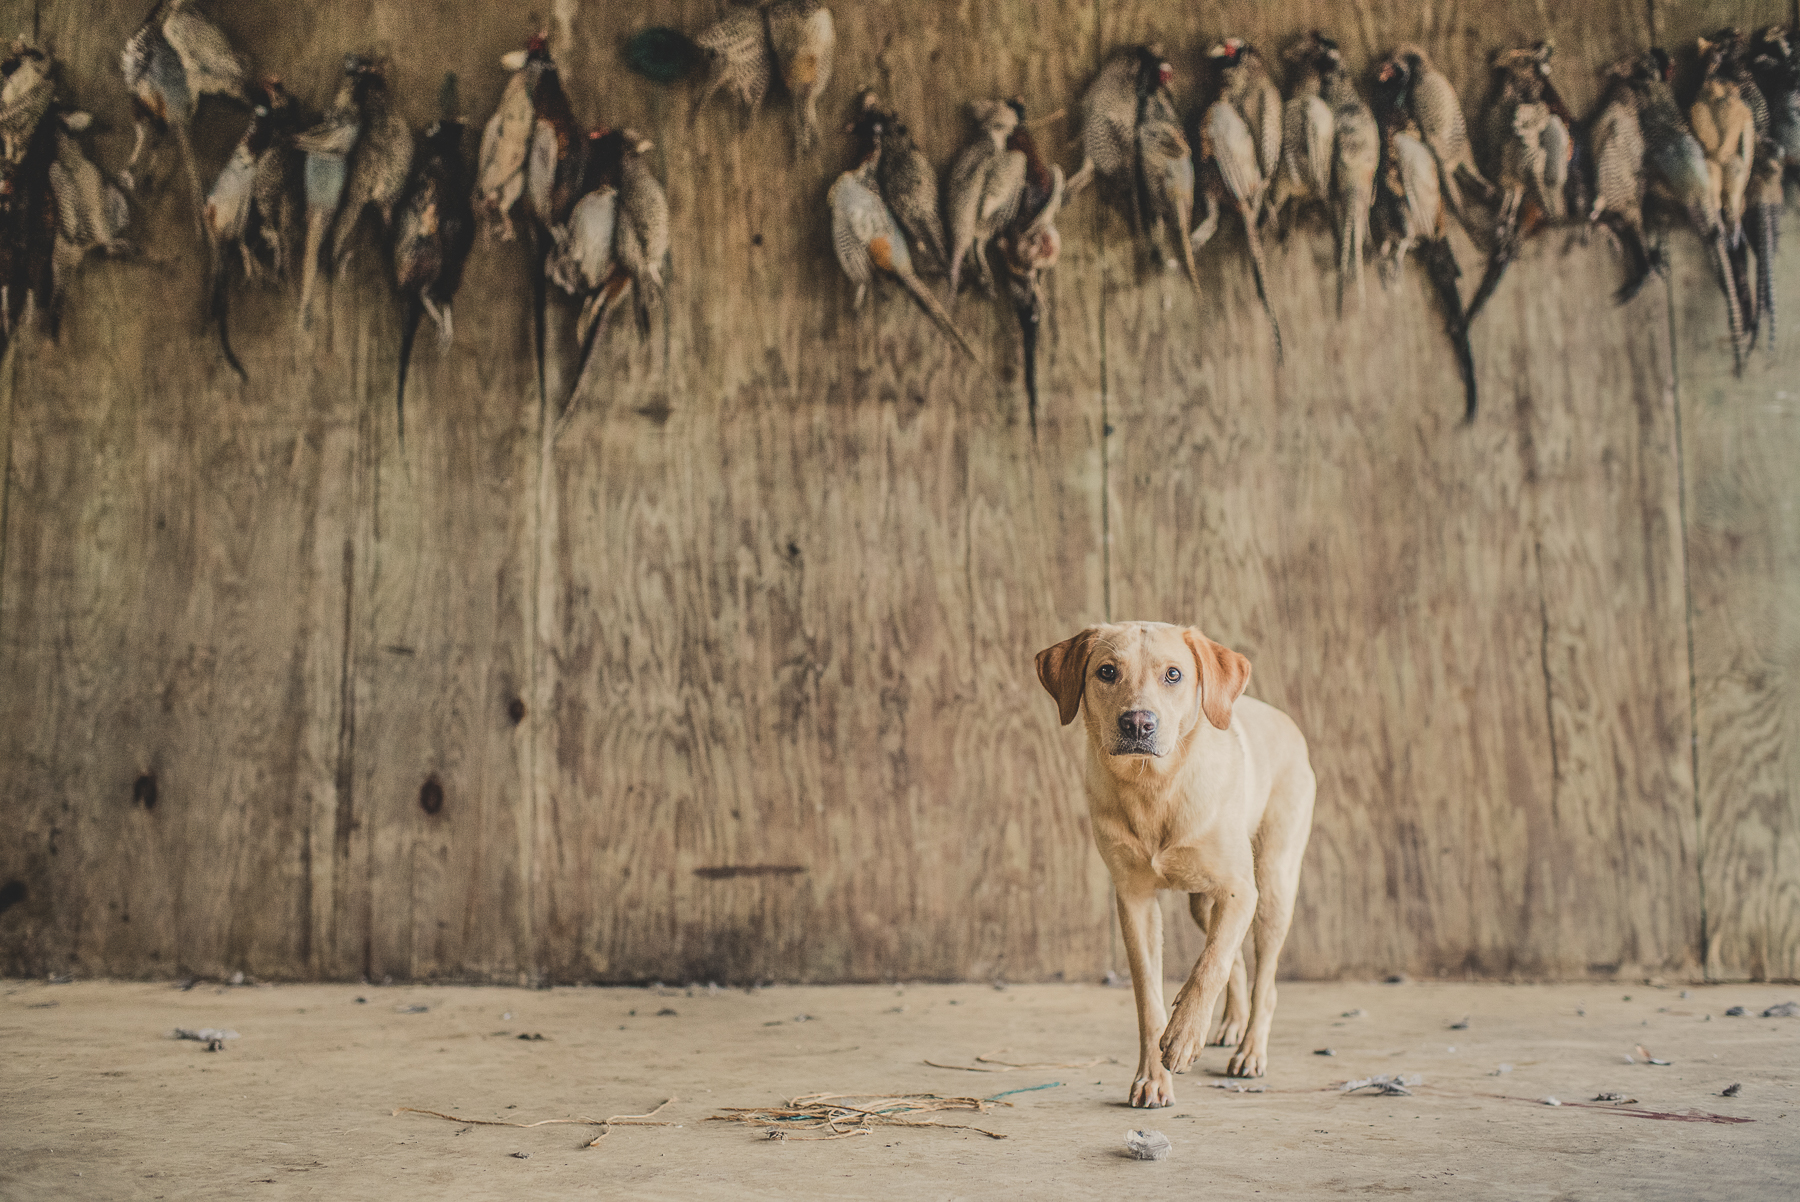 Yellow Labrador sitting under braces of shot pheasants walking towards camera